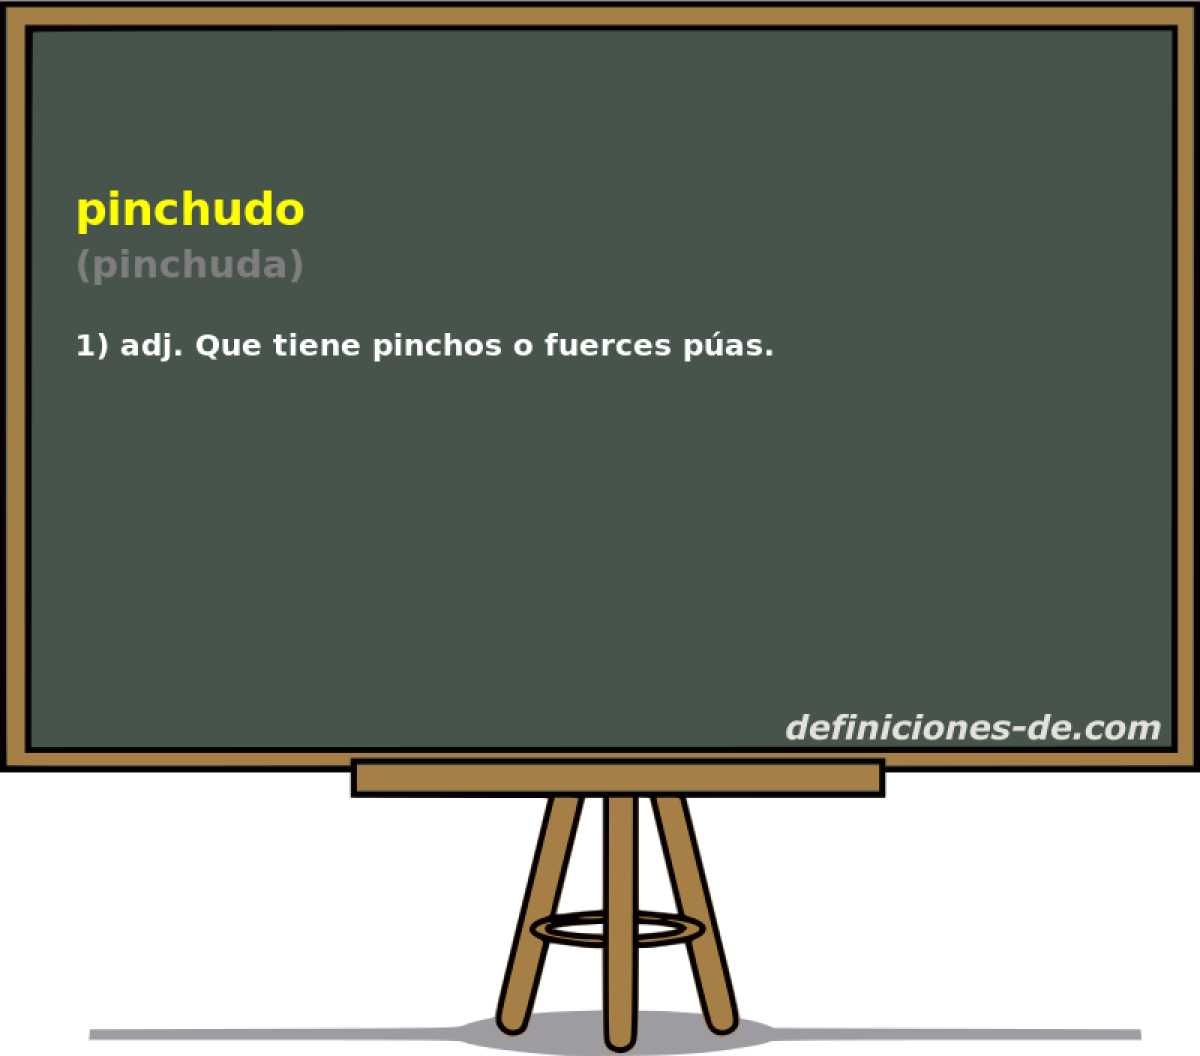 pinchudo (pinchuda)